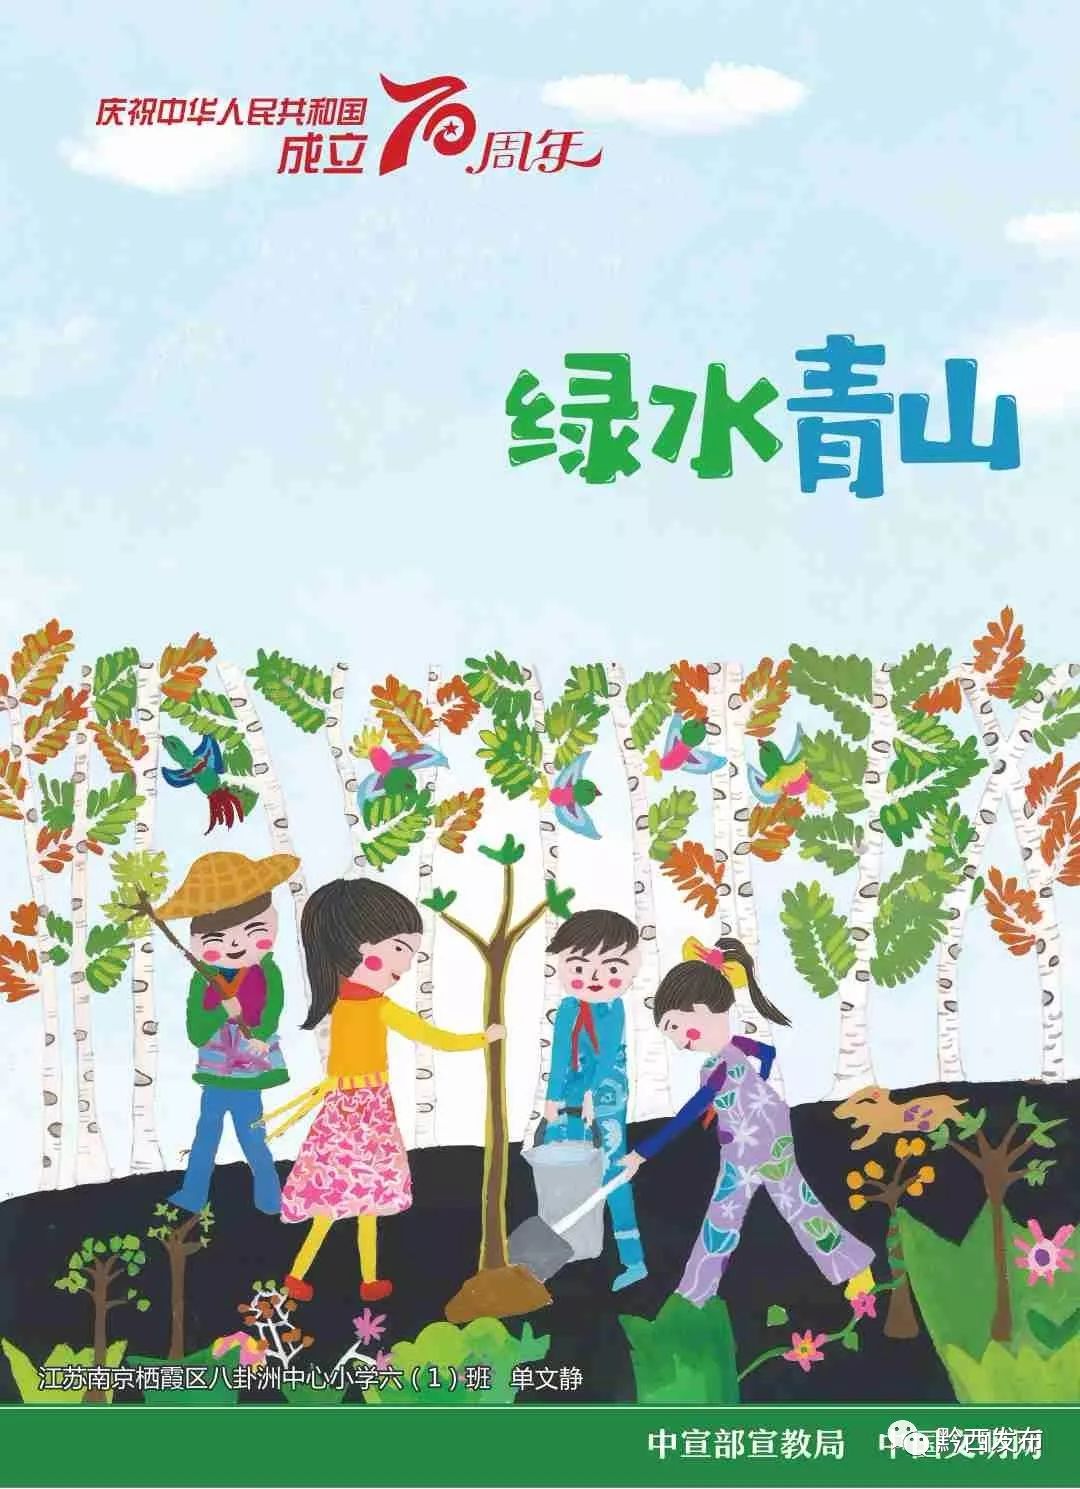 中宣部宣教局,中国文明网发布庆祝新中国成立70周年儿童画公益广告